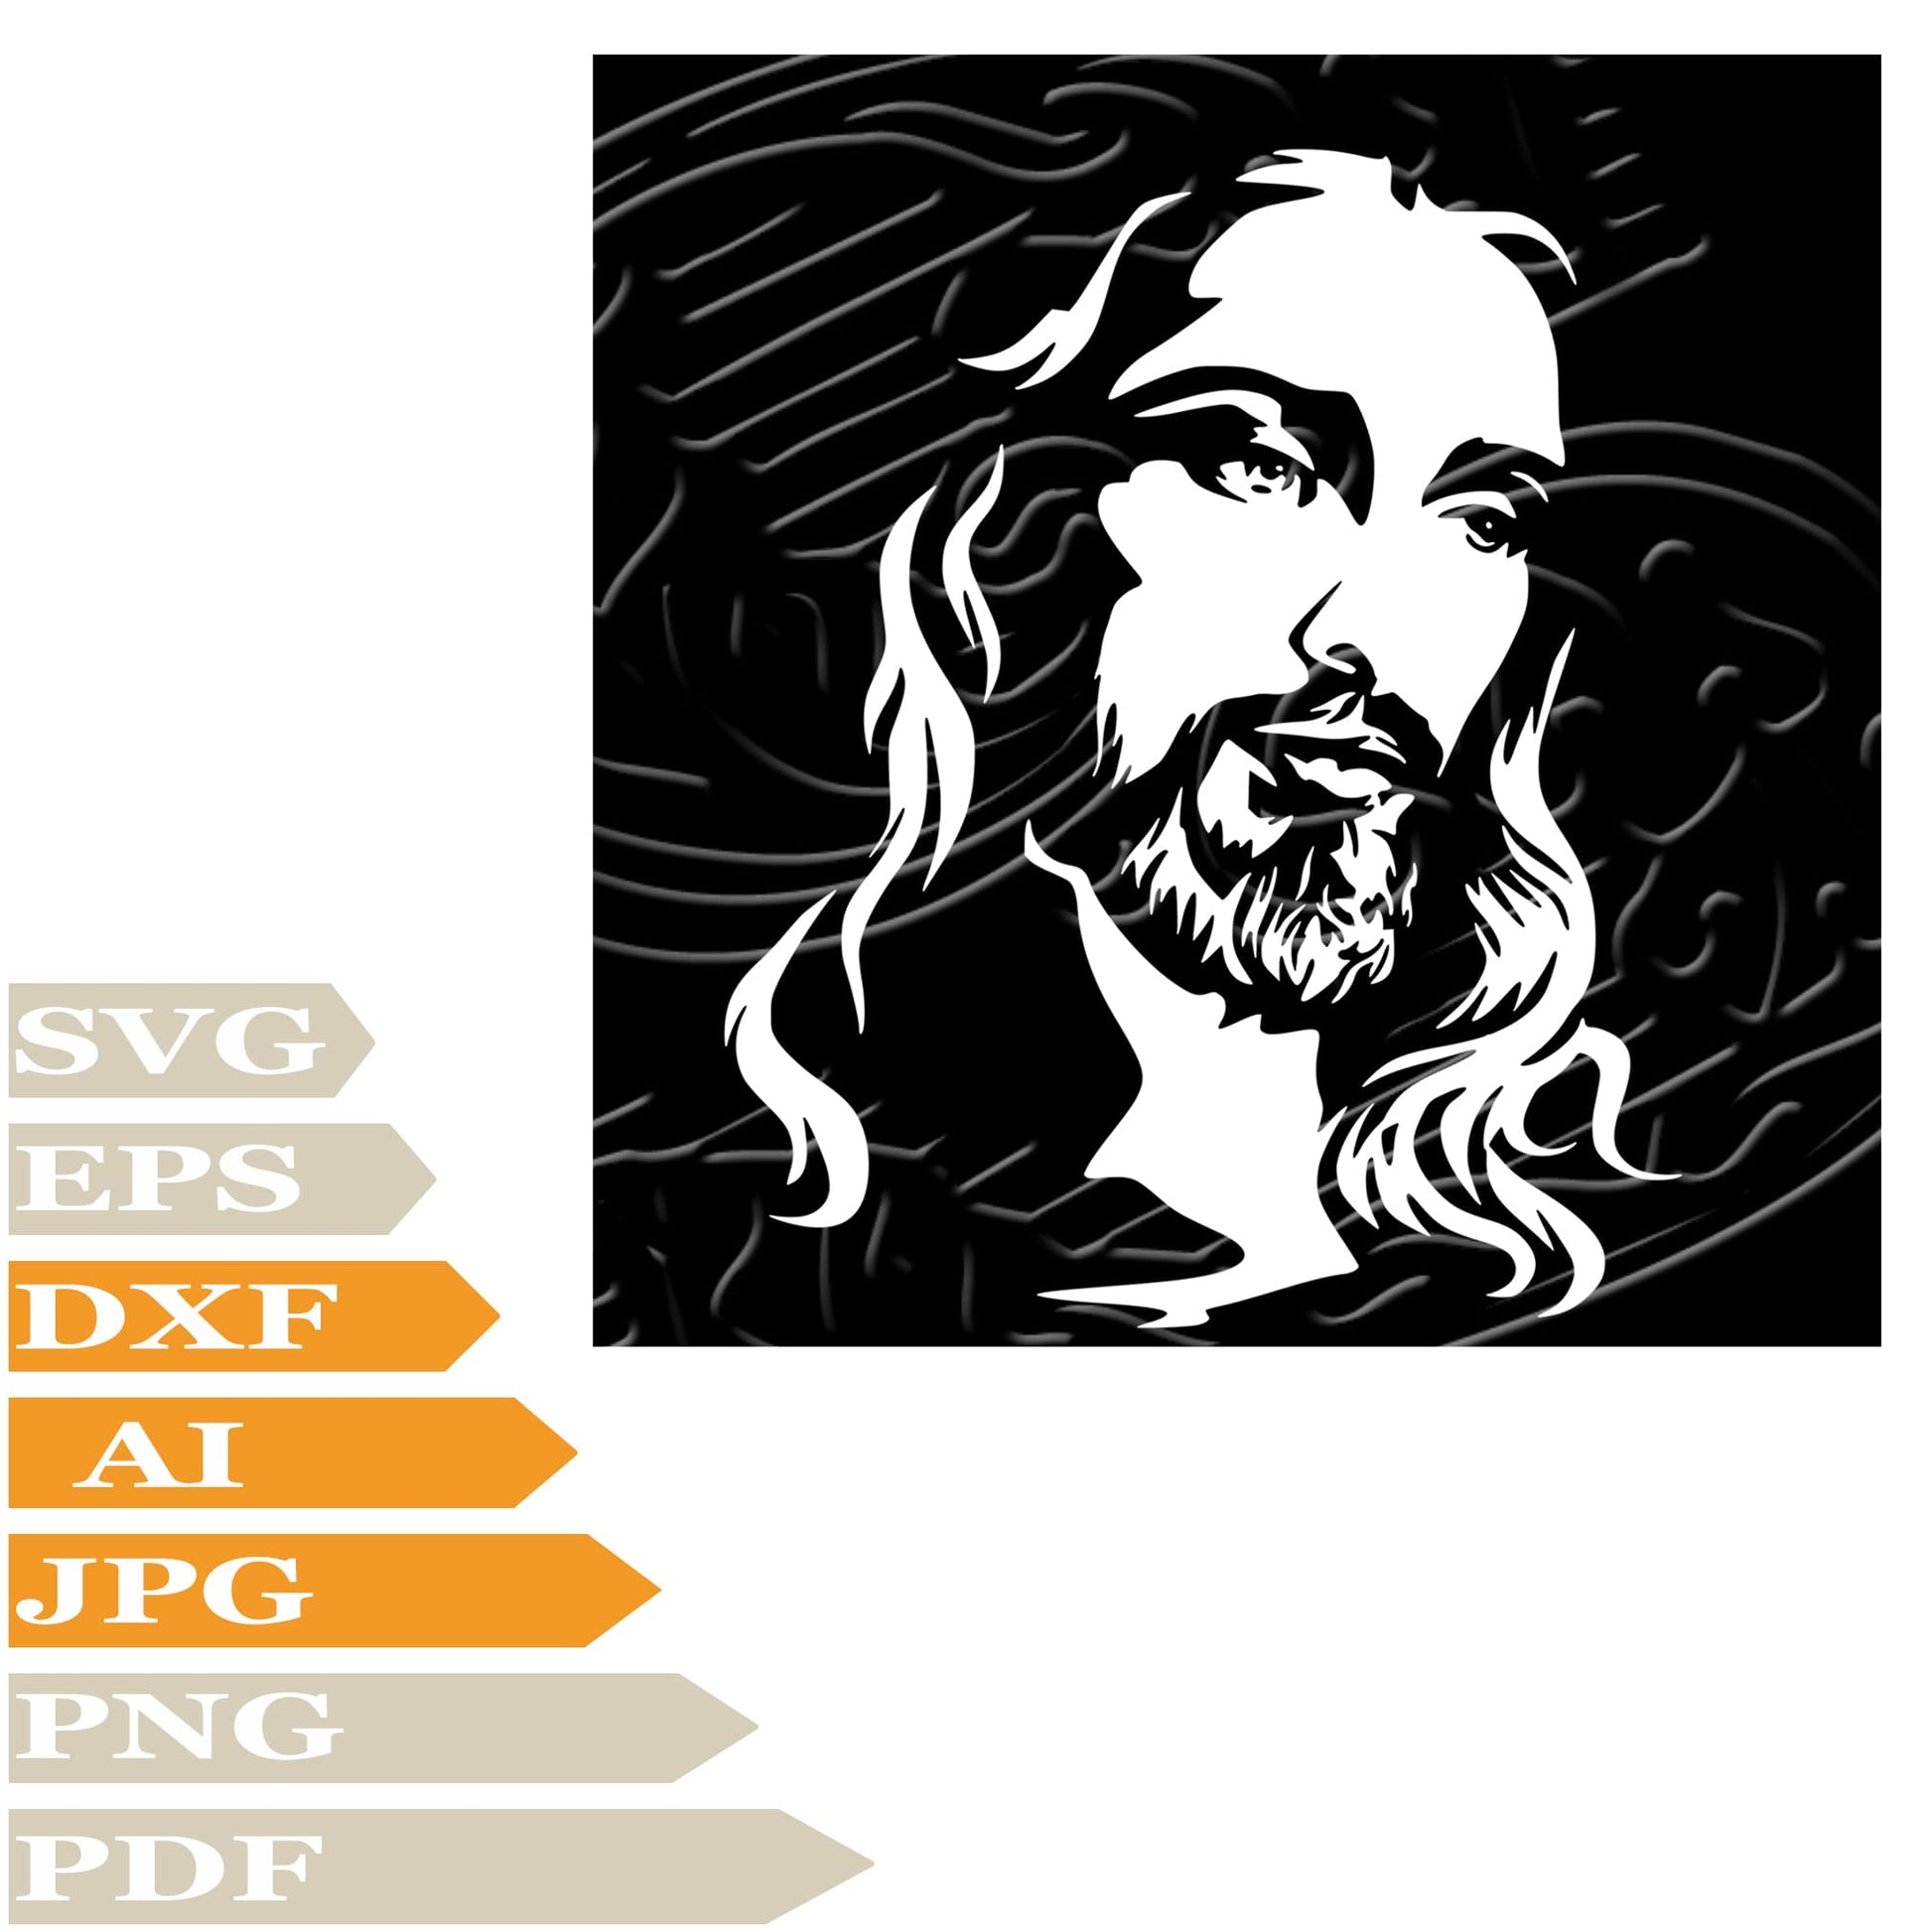 Jesus Christ Svg File,Jesus Svg Design,Face Of Jesus christ Png,Jesus Vector File,Jesus Christ Svg For Tattoo,Face Of Jesus christ Svg For Cricut